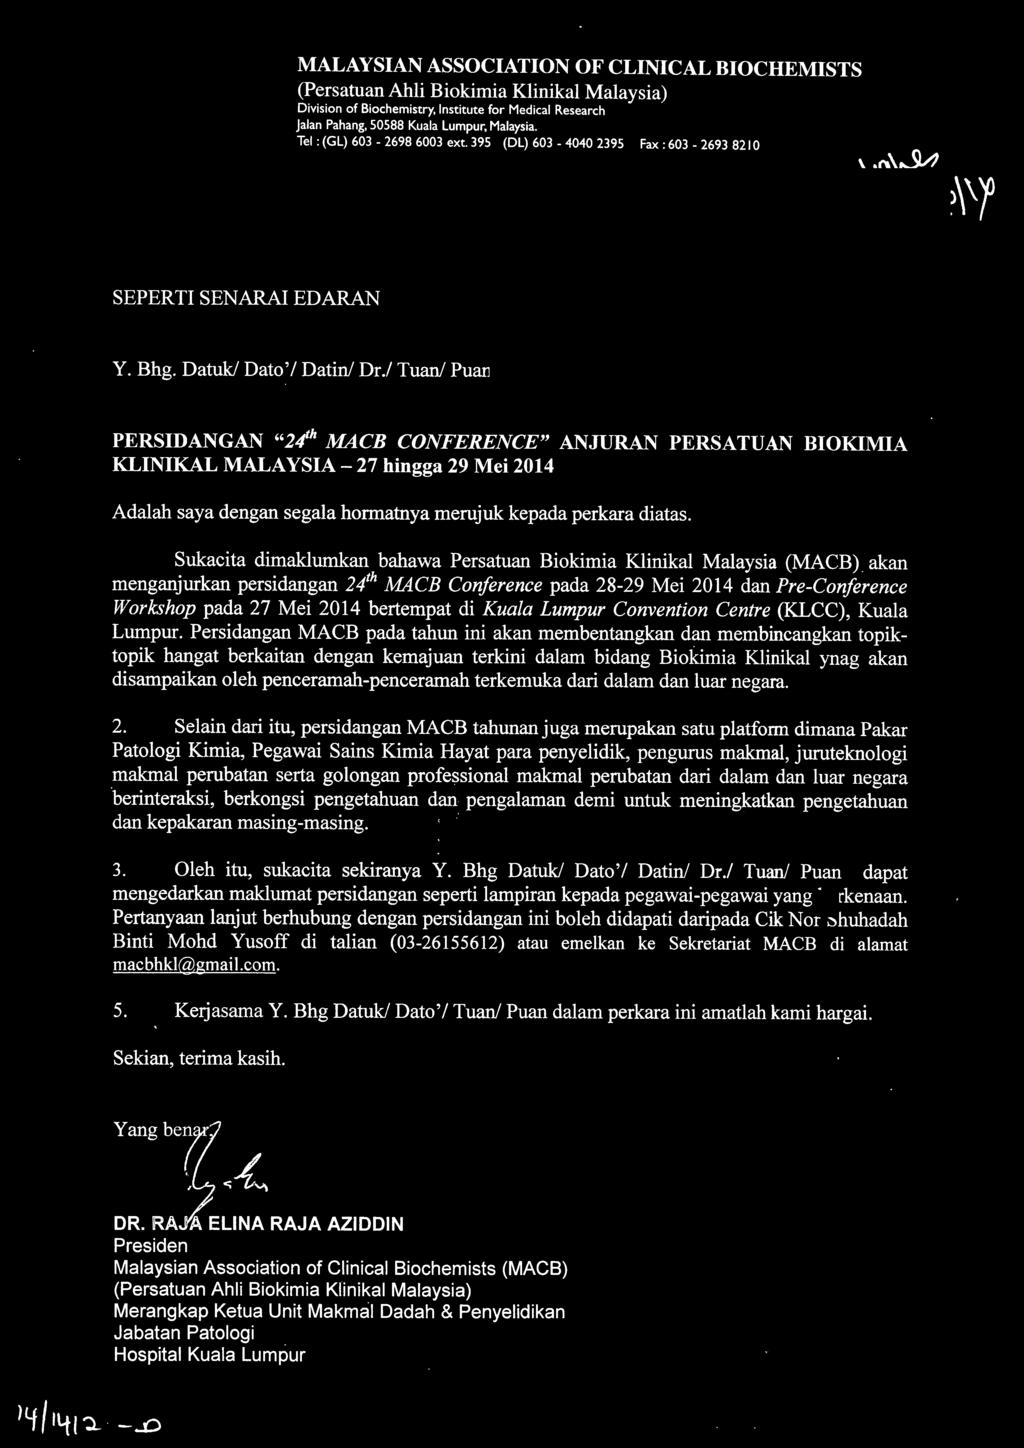 Sukacita dimaklumkan bahawa Persatuan Biokimia Klinikal Malaysia (MACB) akan menganjurkan persidangan 2lh MACB Conference pada 28-29 Mei 2014 dan Pre-Conference Workshop pada 27 Mei 2014